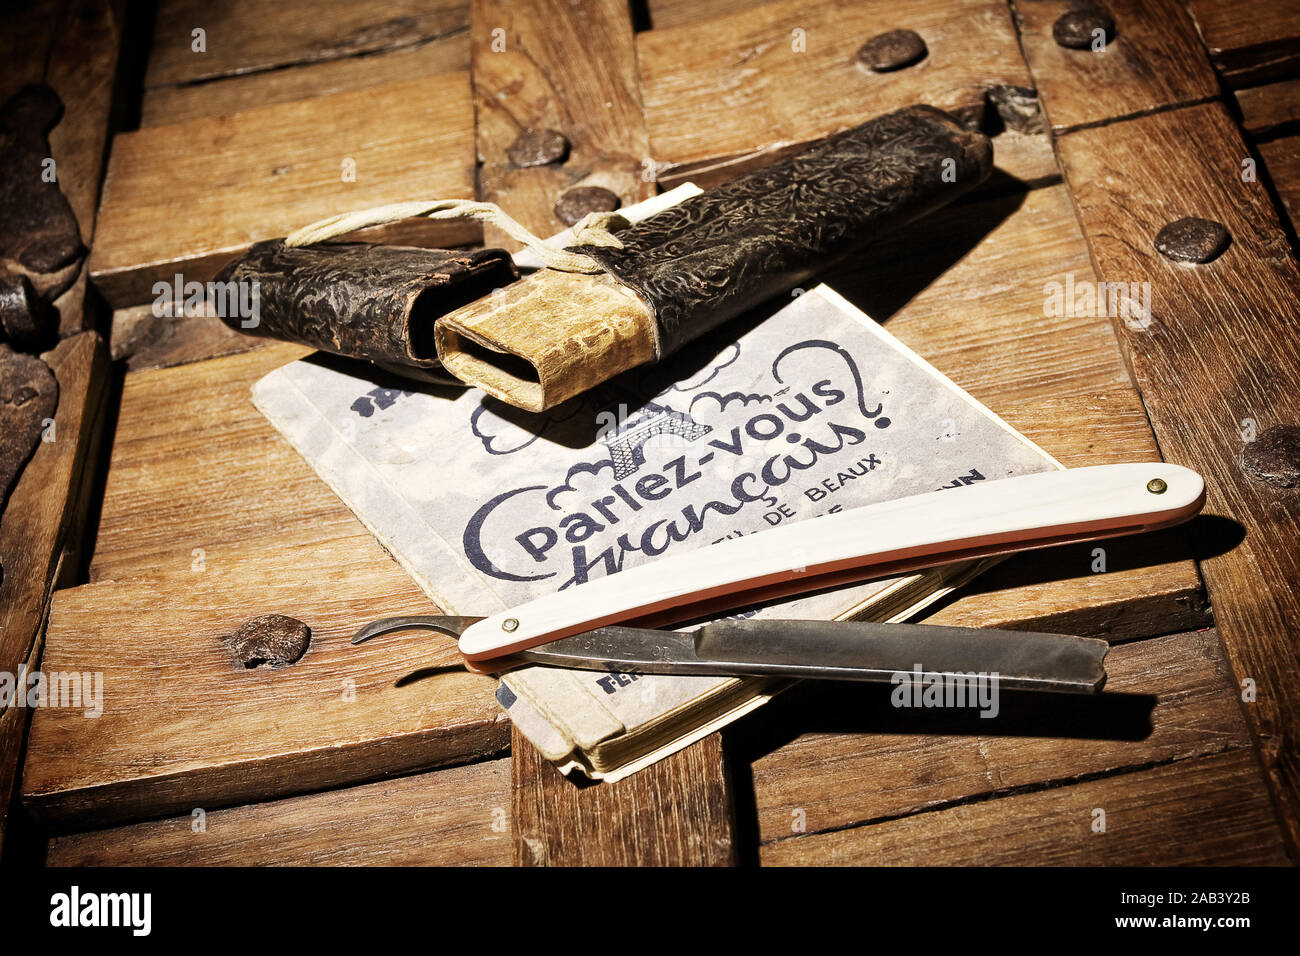 Rasiermesser mit Wörterbuch in einer Holzkiste | Rasiermesser mit einem Wörterbuch auf einer hölzernen Box | Stockfoto